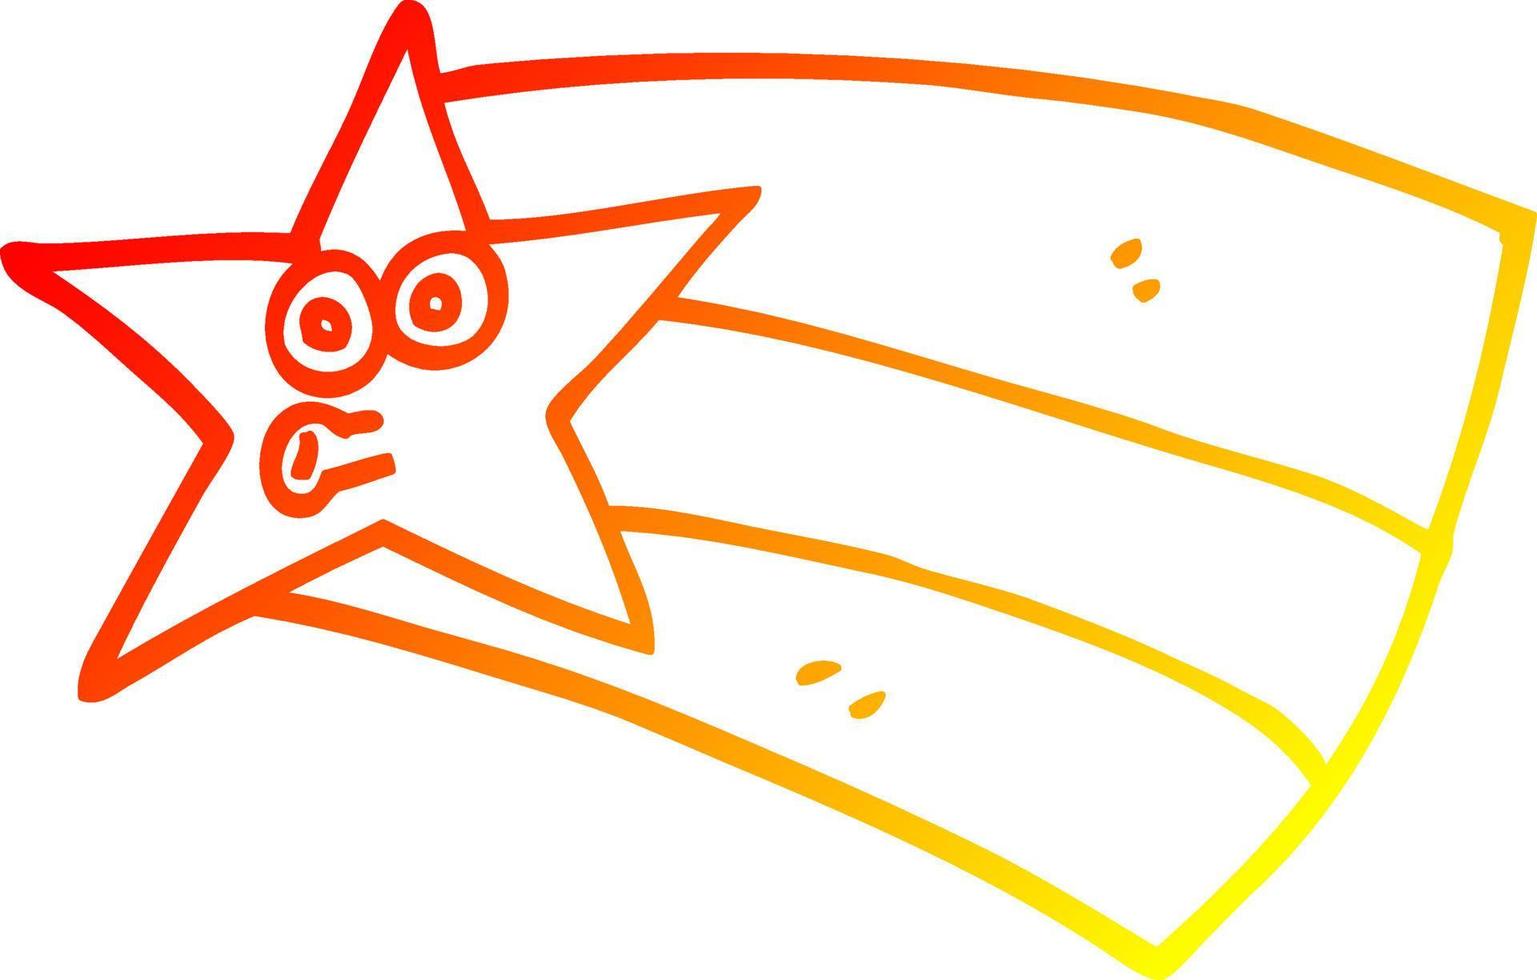 estrela cadente dos desenhos animados de desenho de linha de gradiente quente vetor